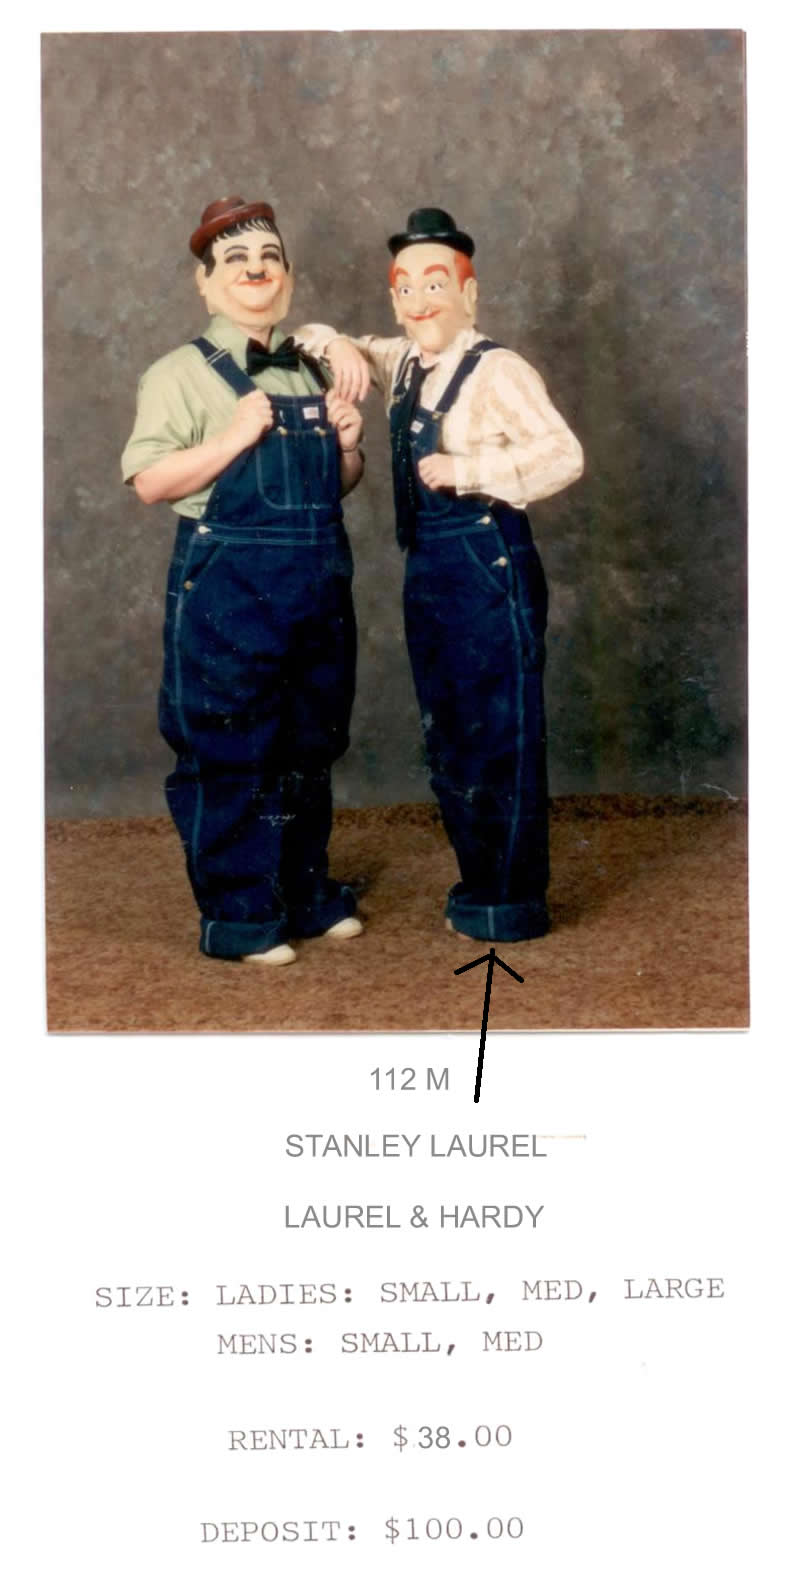 STANLEY LAUREL